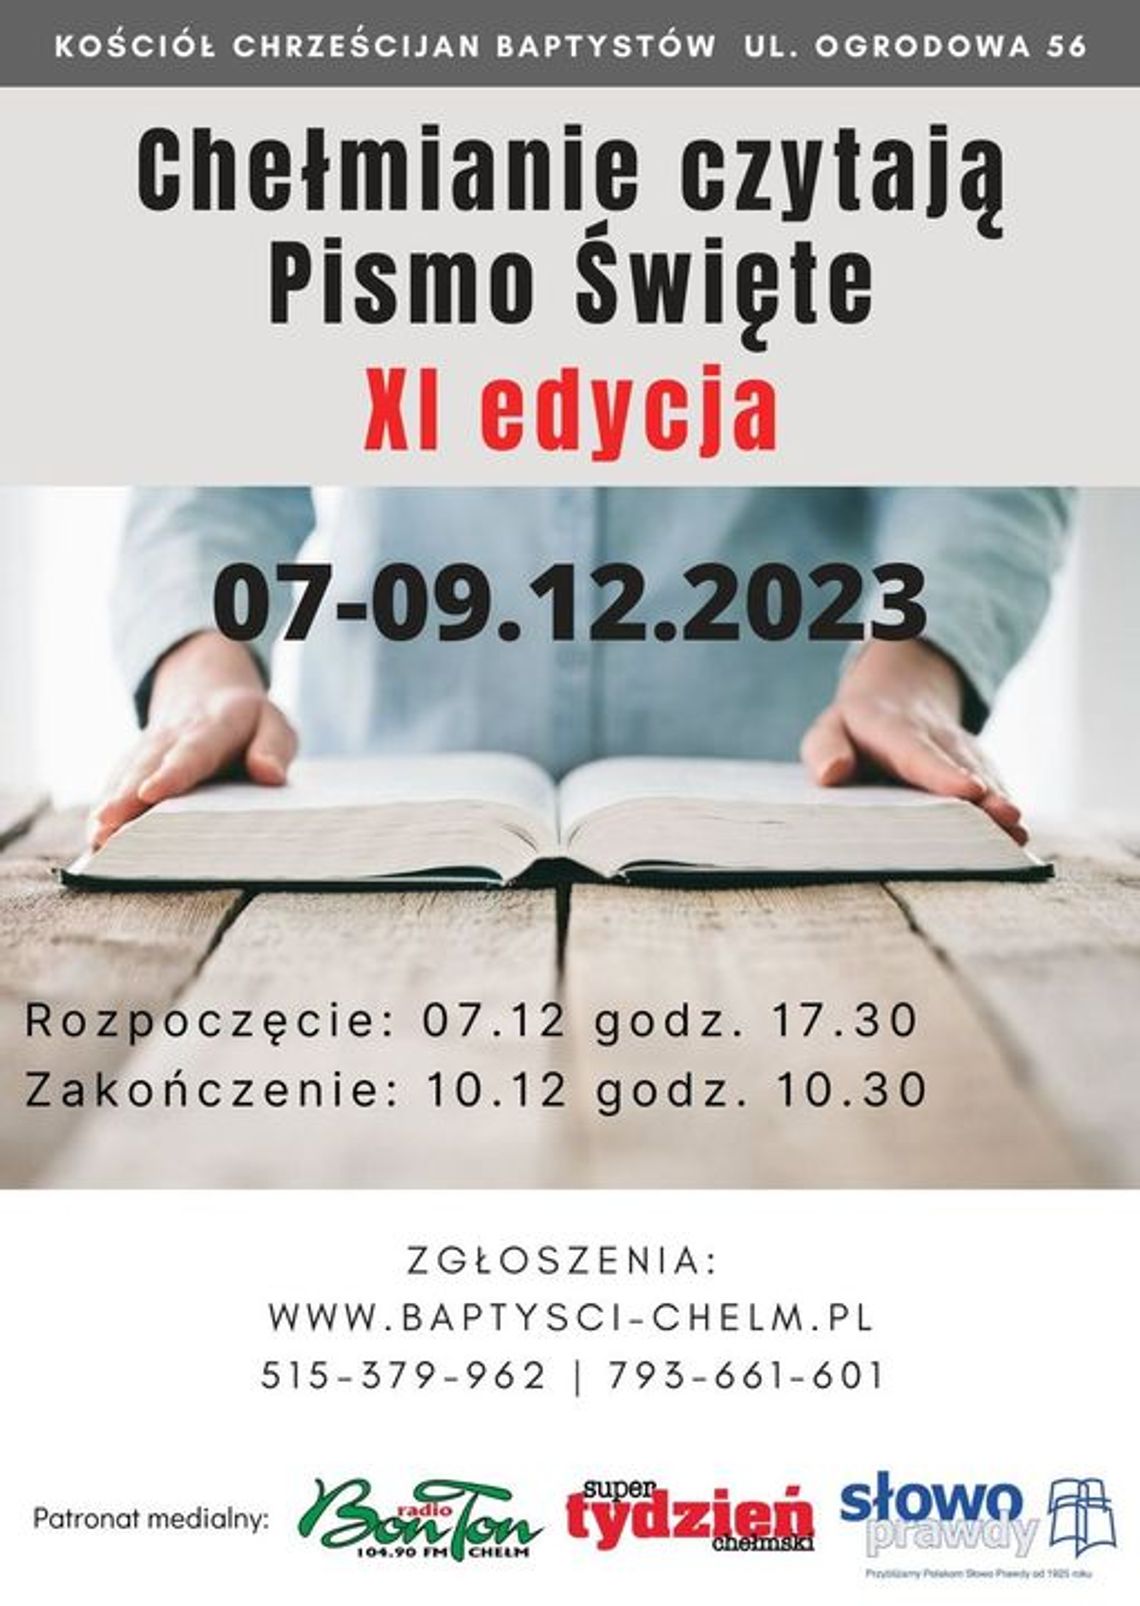 Chełmianie czytają Pismo Święte po raz 11!